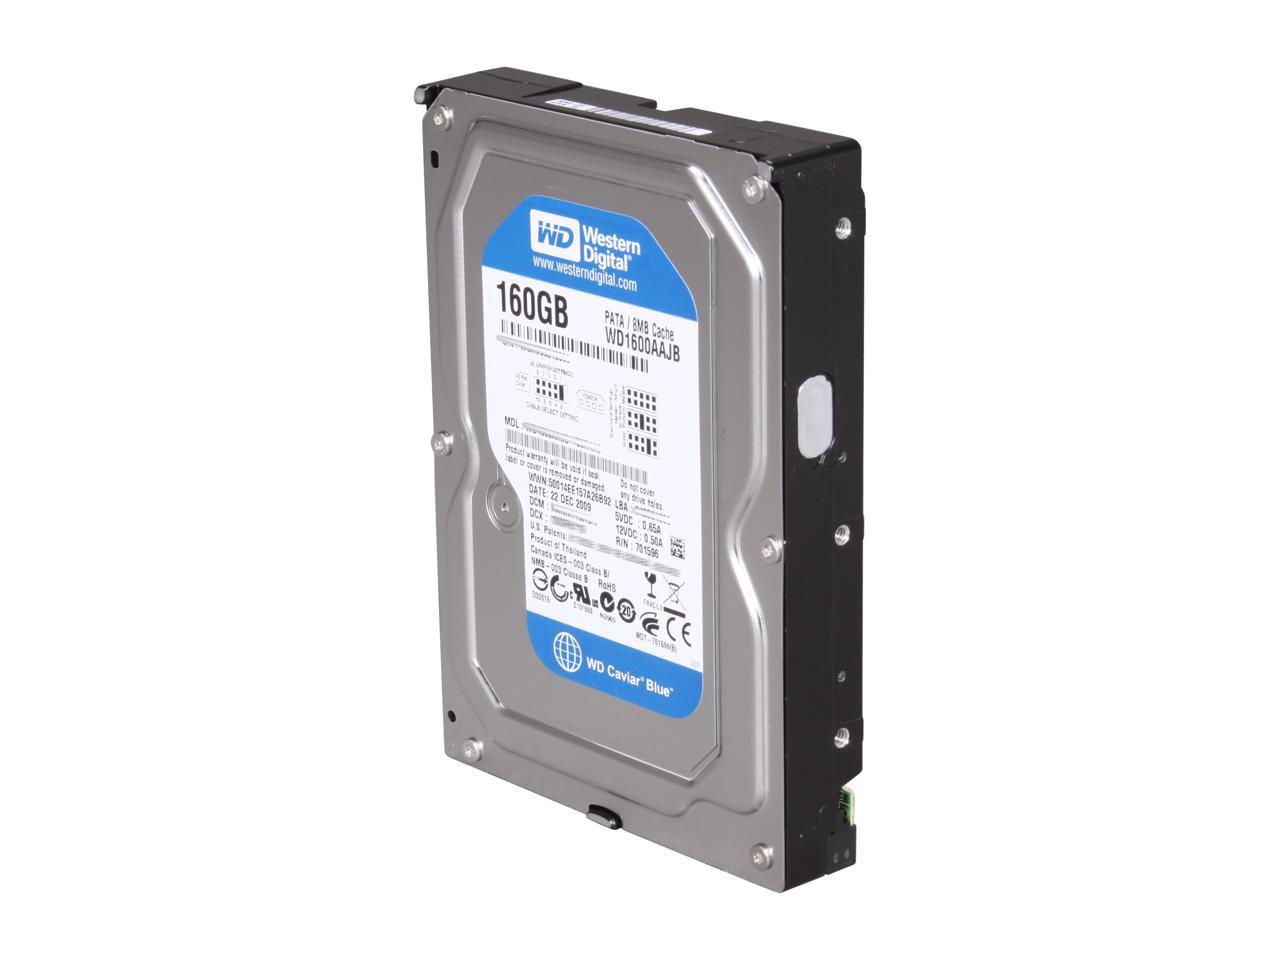 Western Digital Blue WD1600AAJB 160GB 7200 RPM 8MB Cache IDE Ultra ATA100 / ATA-6 3.5" Internal Hard Drive Bare Drive